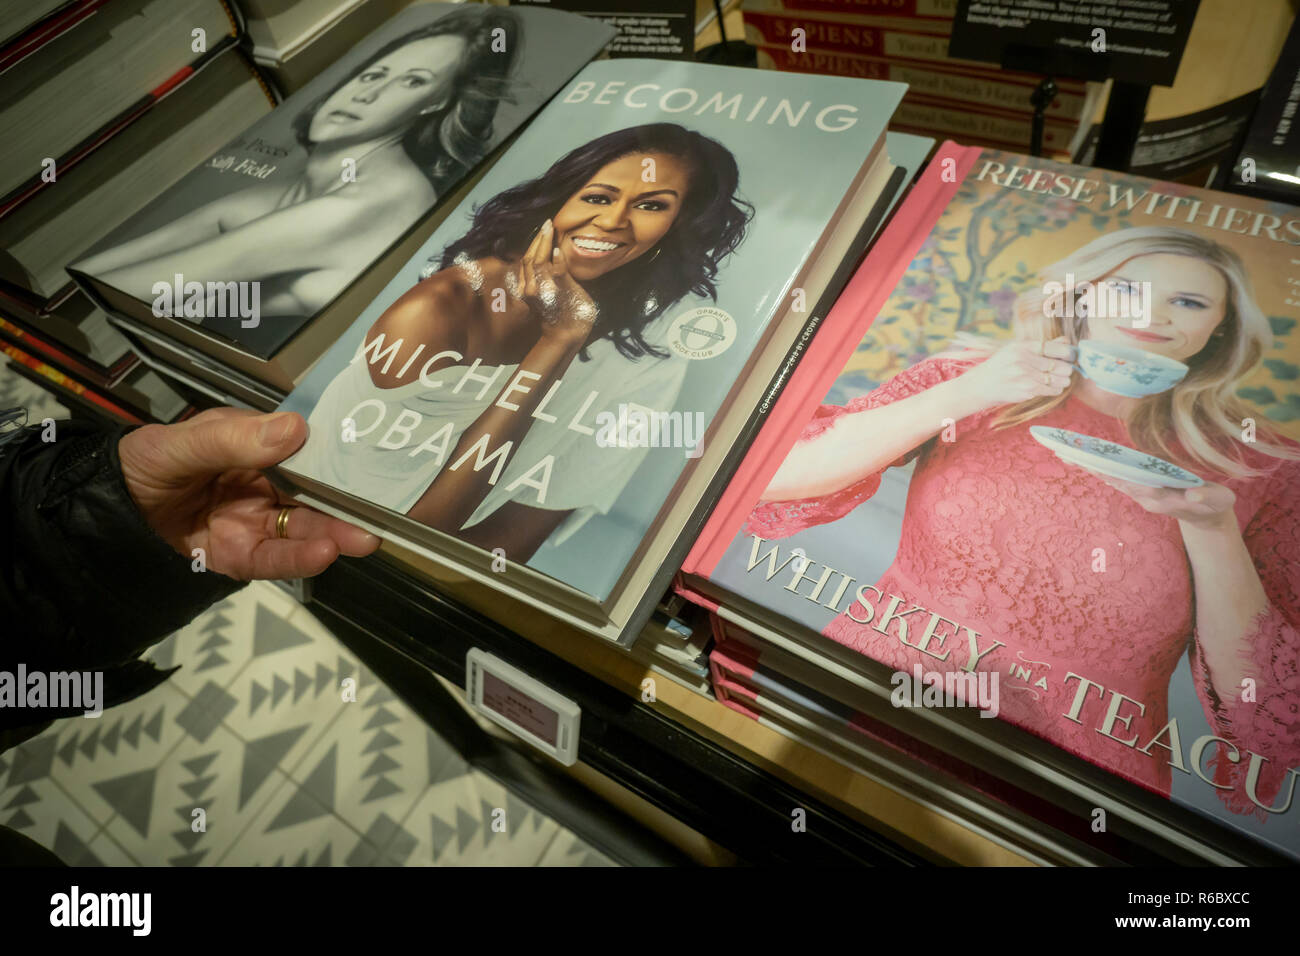 Kopien von Lady Michelle Obamas Buch „Going“ in einem Amazon-Store in New York am Samstag, den 1. Dezember 2018. Obamas Buch hat in den ersten 15 Tagen über 2 Millionen Exemplare in allen Formaten verkauft und ist damit das meistverkaufte Buch von 2018. (â Richard B. Levine) Stockfoto